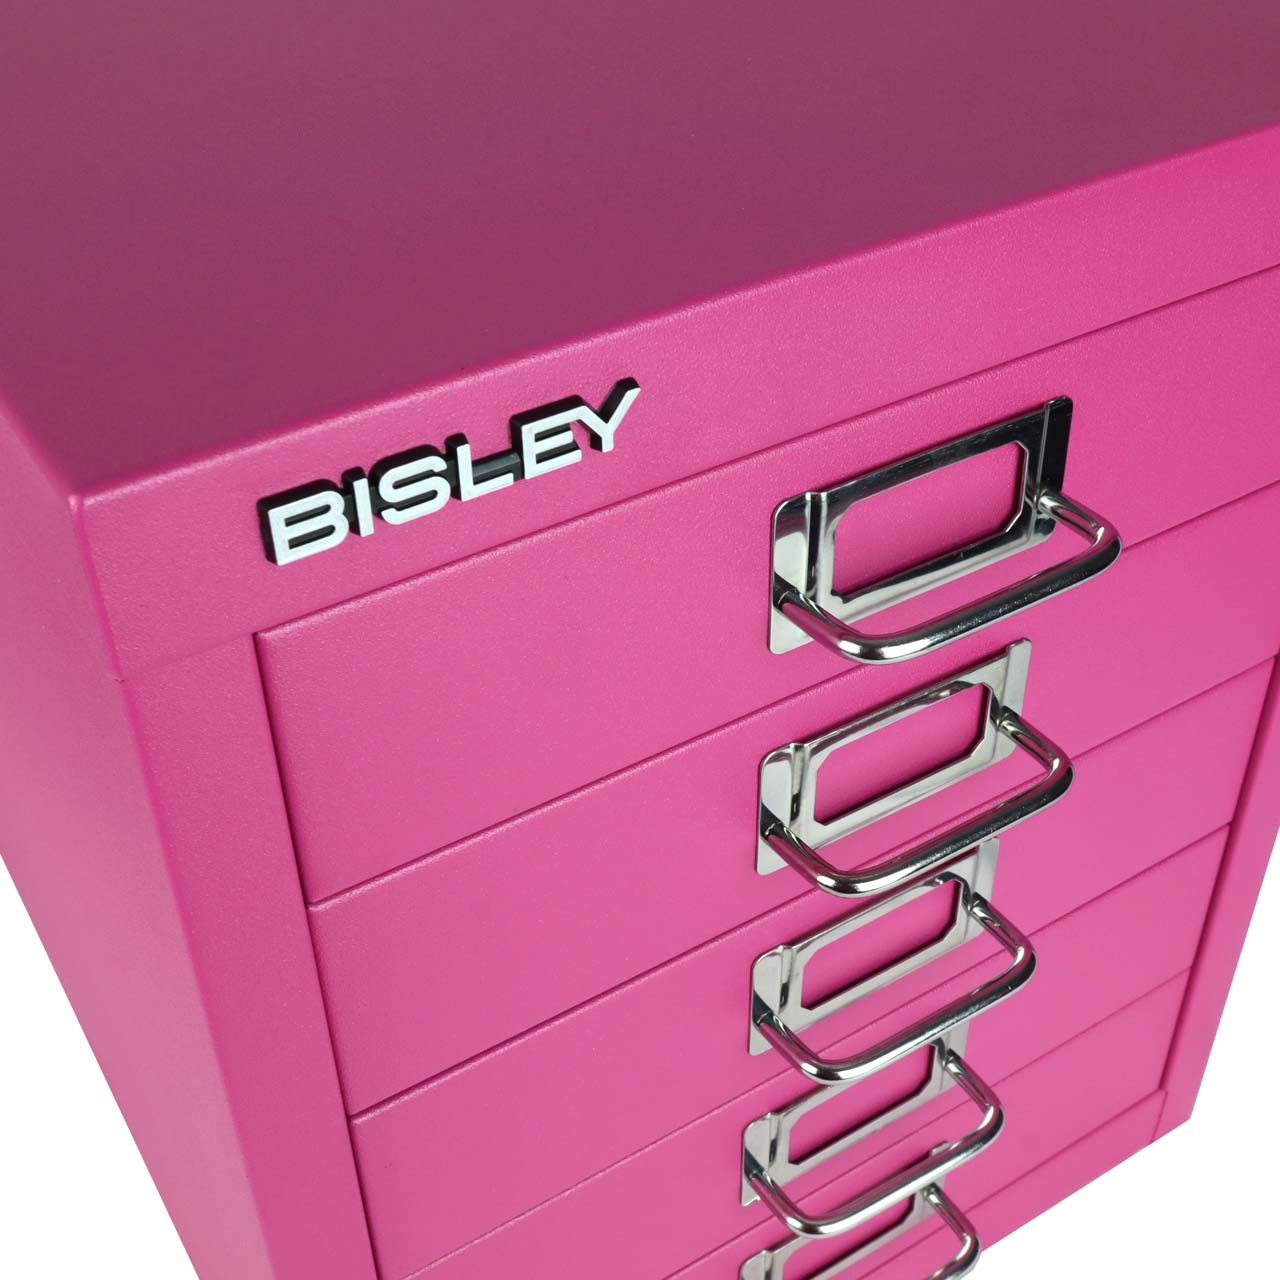  Bisley 5 Drawer Steel Desktop Multidrawer Storage Cabinet,  Light Gray (MD5-LG) : Home & Kitchen